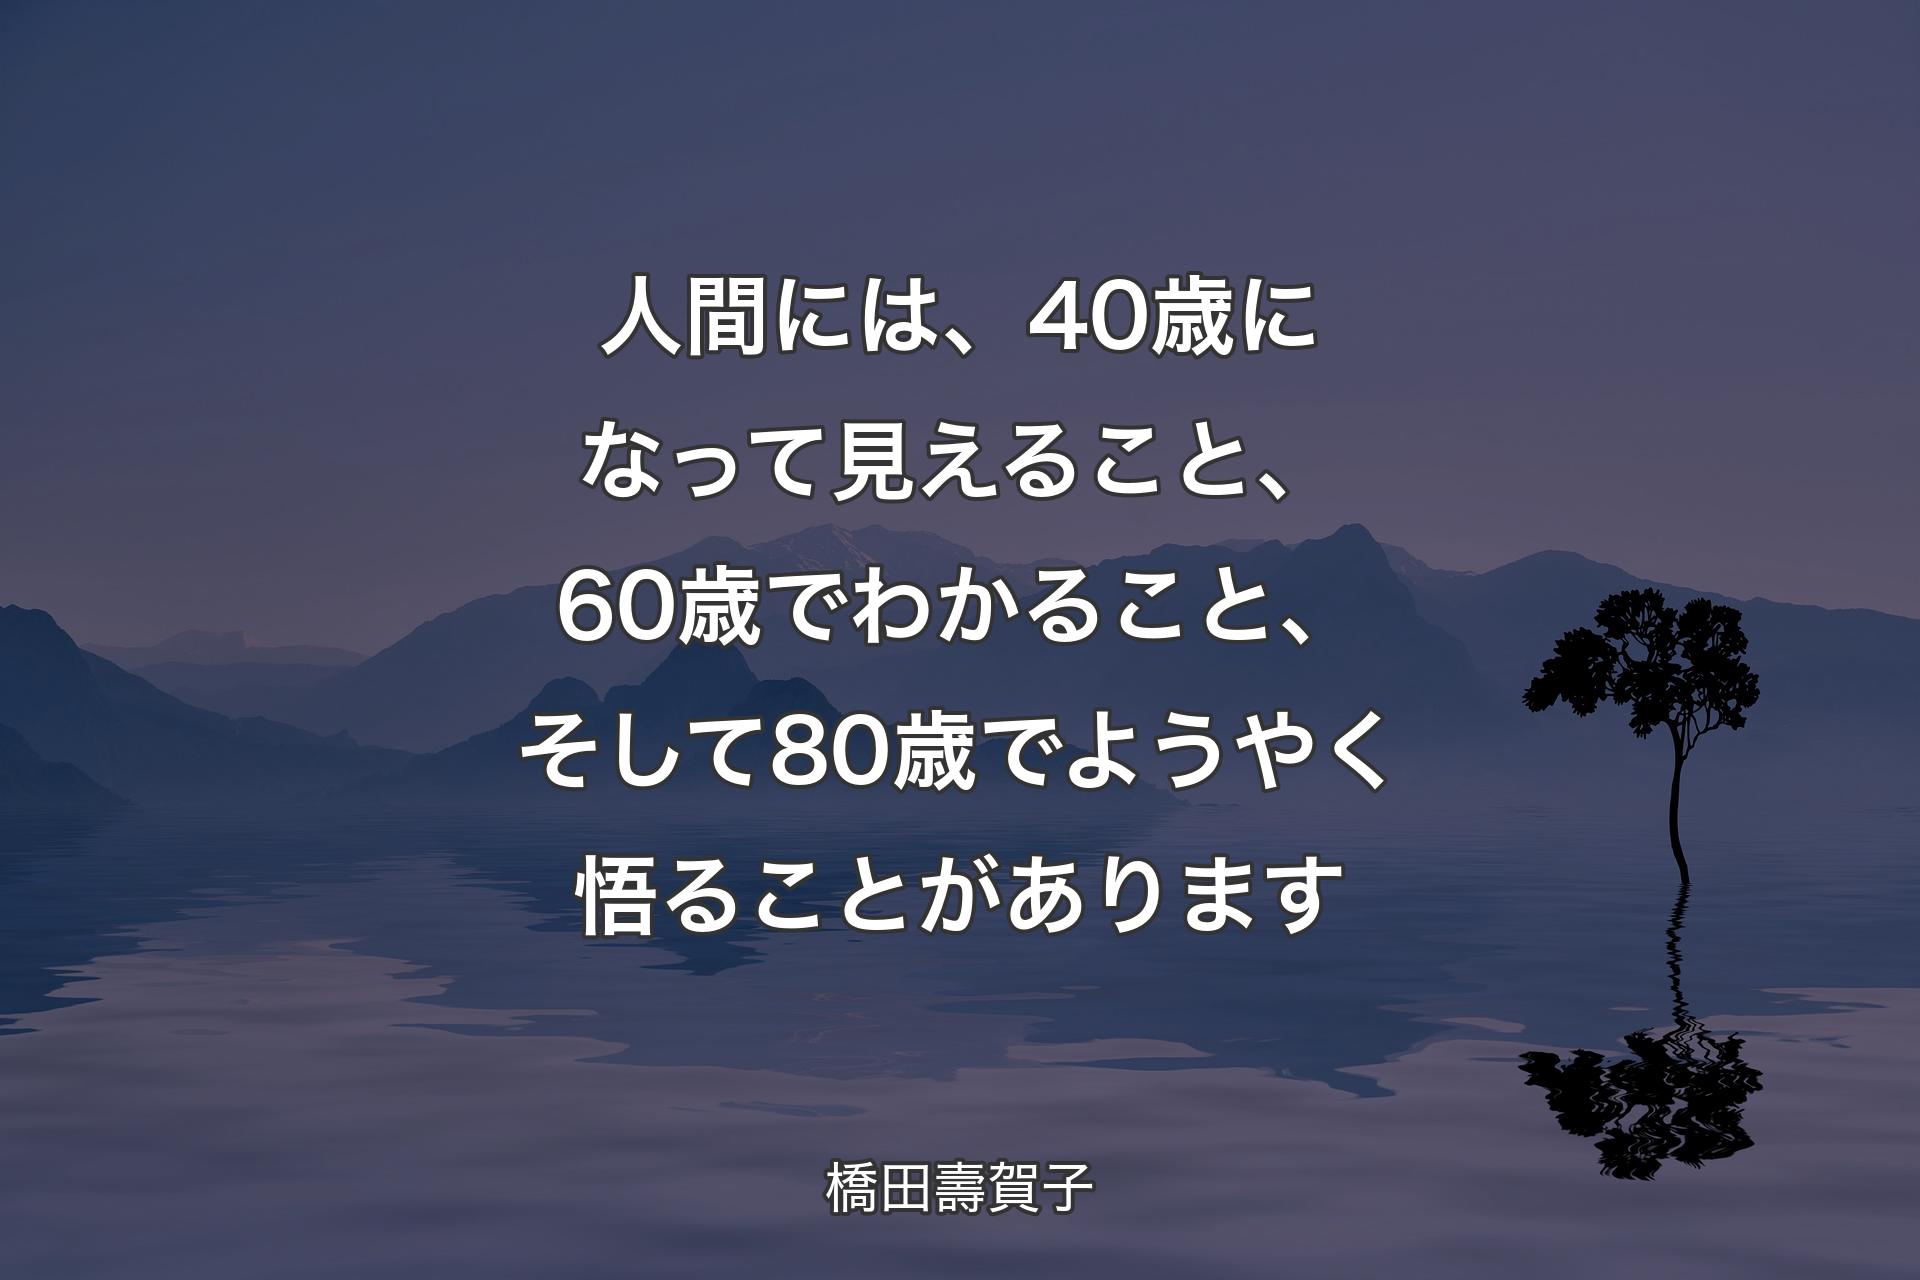 【背景4】人間には、40歳になって見えること、60歳でわかること、そして80歳でようやく悟ることがあります - 橋田壽賀子